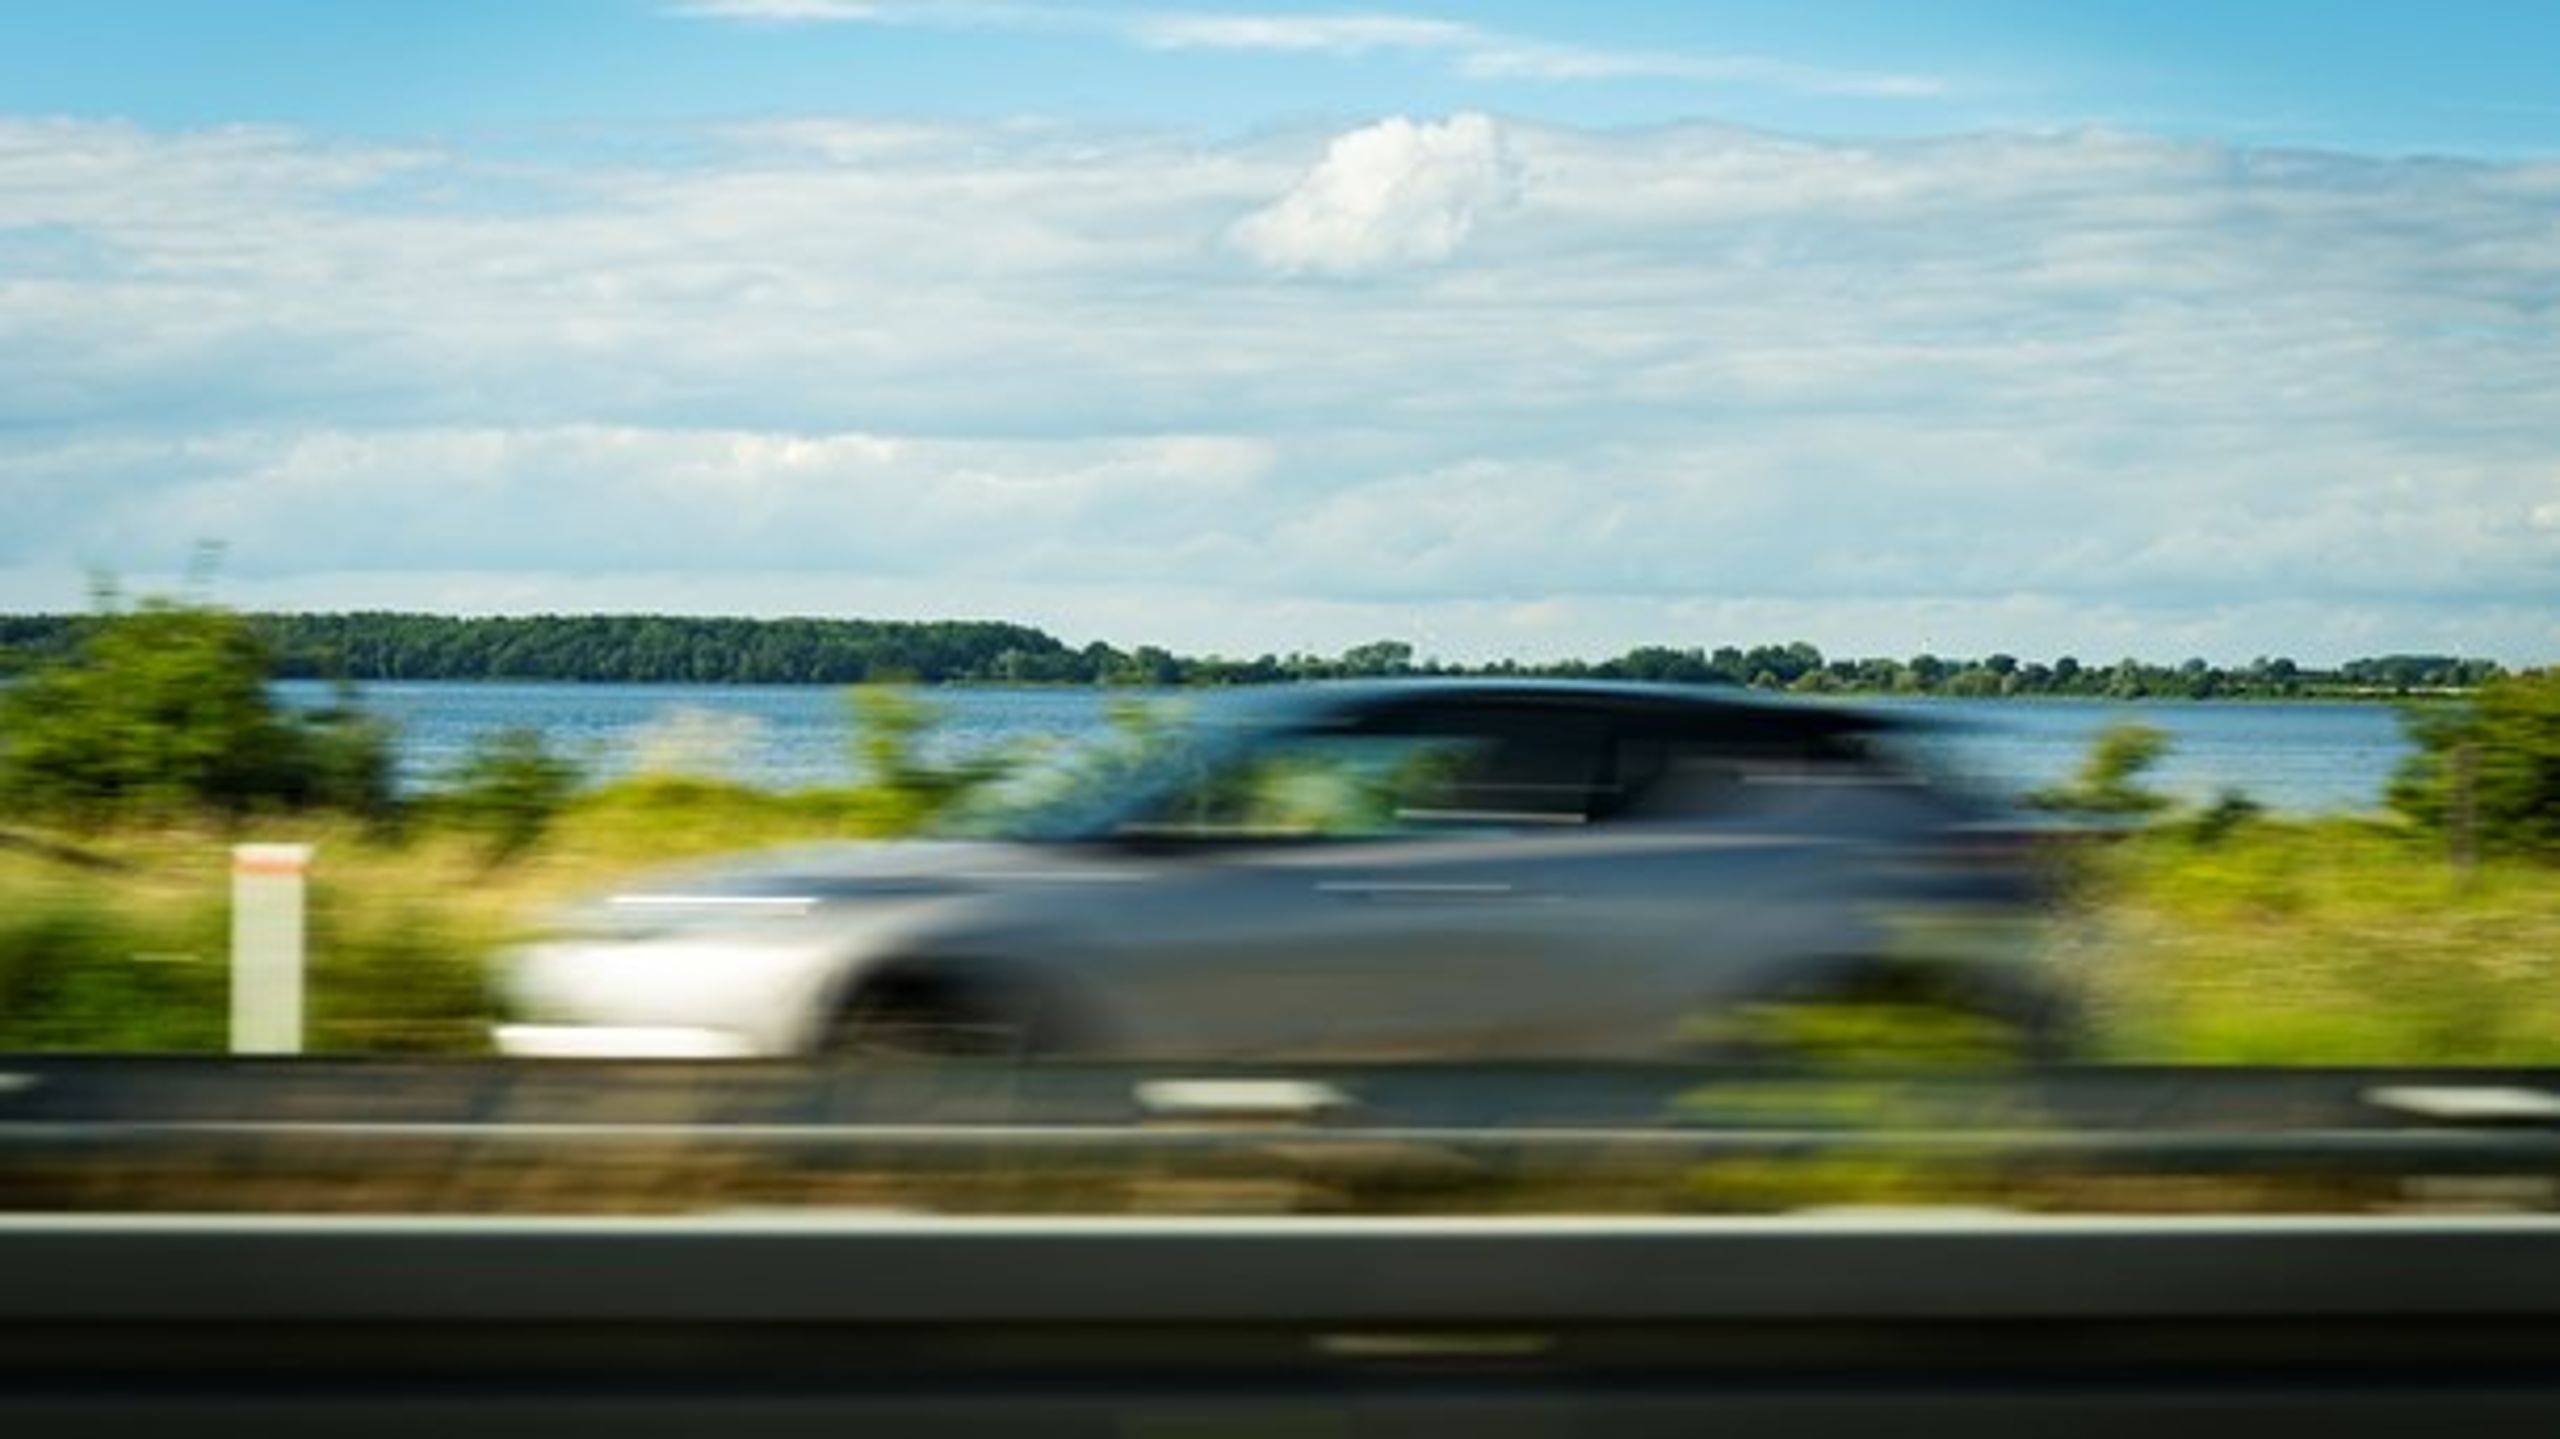 Roadpricing er et afgørende værktøj, hvis vi skal ændre danskernes kørevaner, skriver Morten Jakobsen.